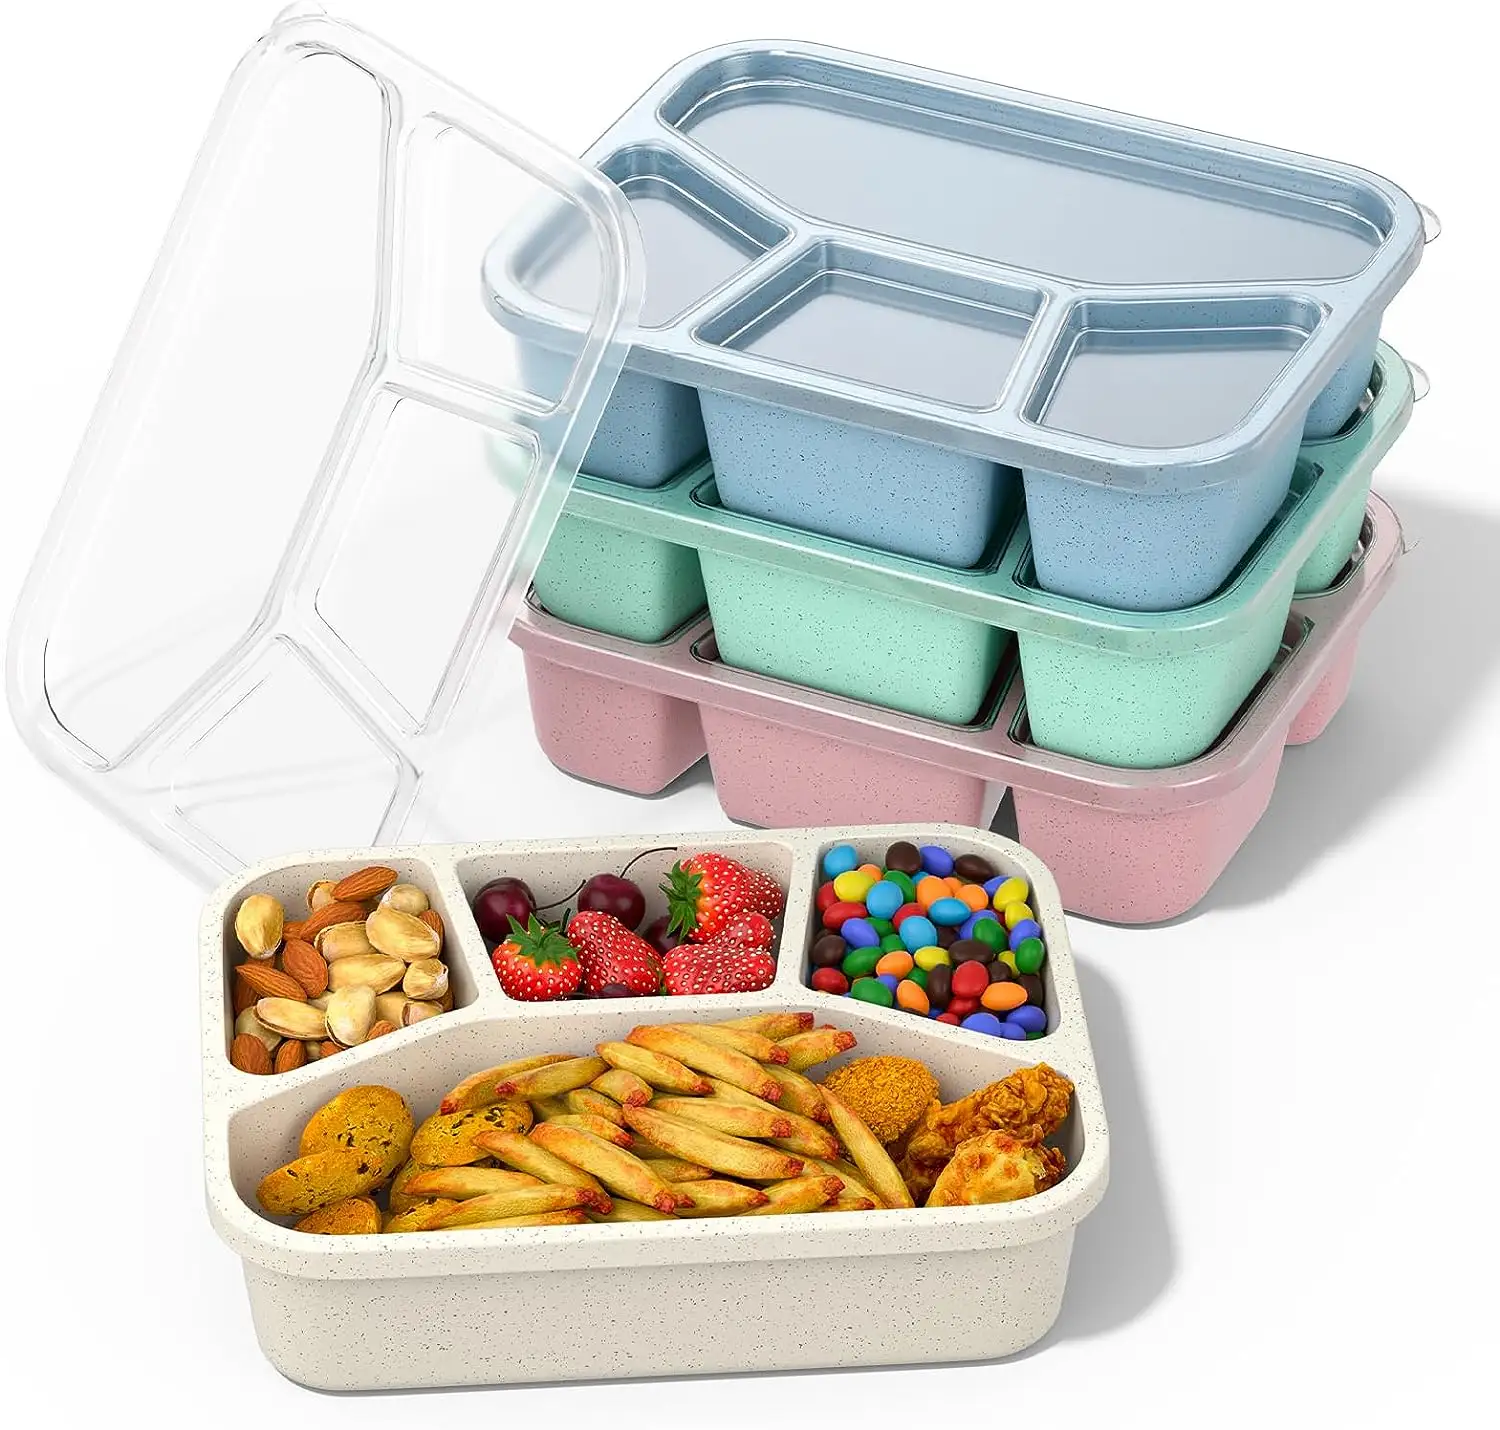 Bento Box Lunch Box per adulti contenitore per la preparazione dei pasti a 4 scomparti contenitori per alimenti riutilizzabili con coperchi trasparenti No BPA